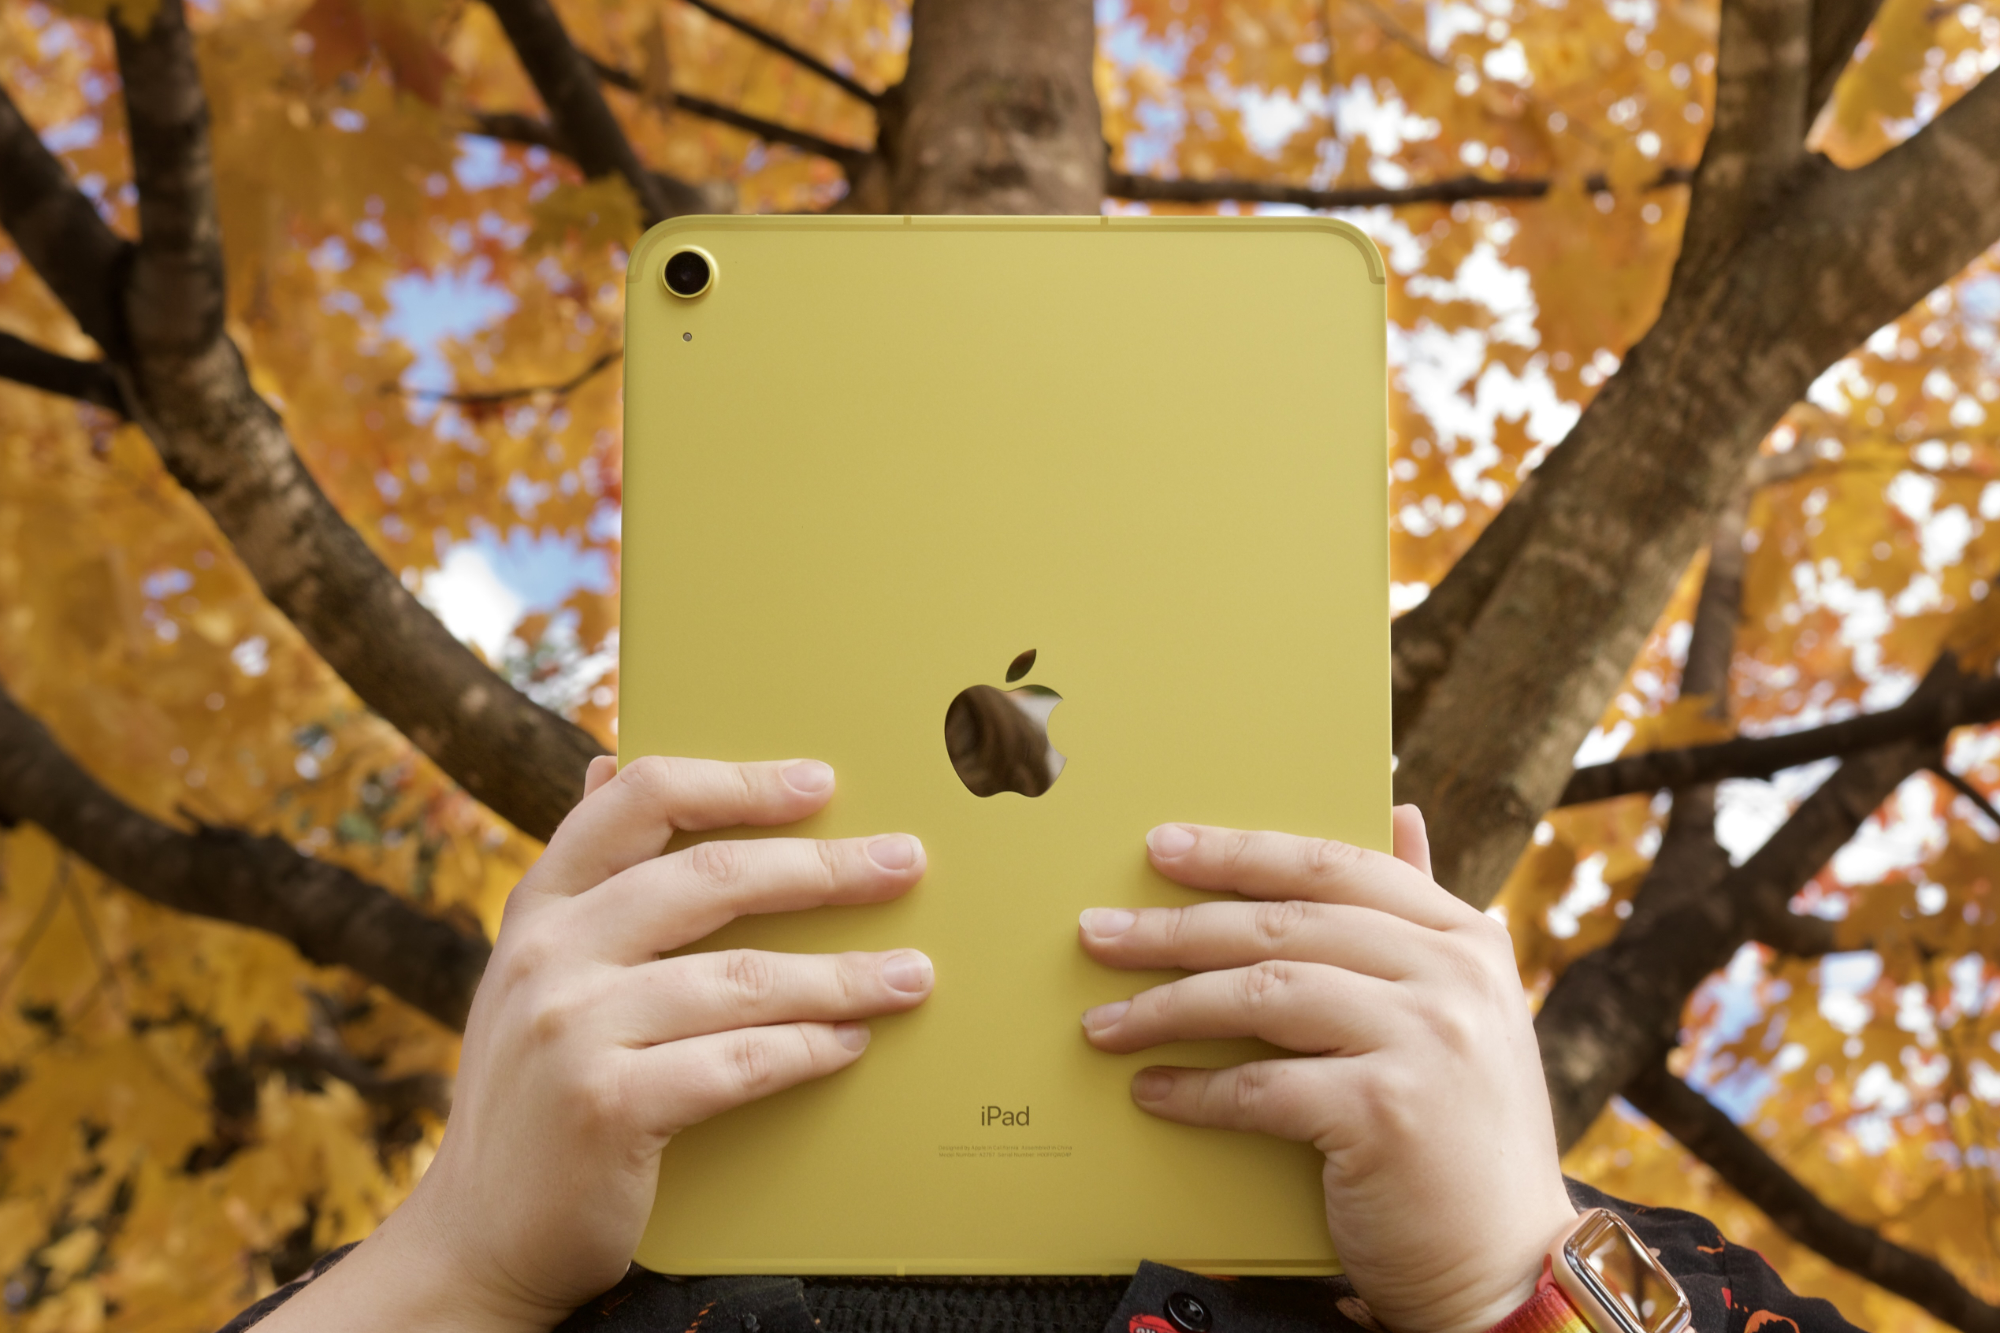 Alguém segurando o iPad amarelo (2022) na frente de árvores com folhas laranja e amarelas.